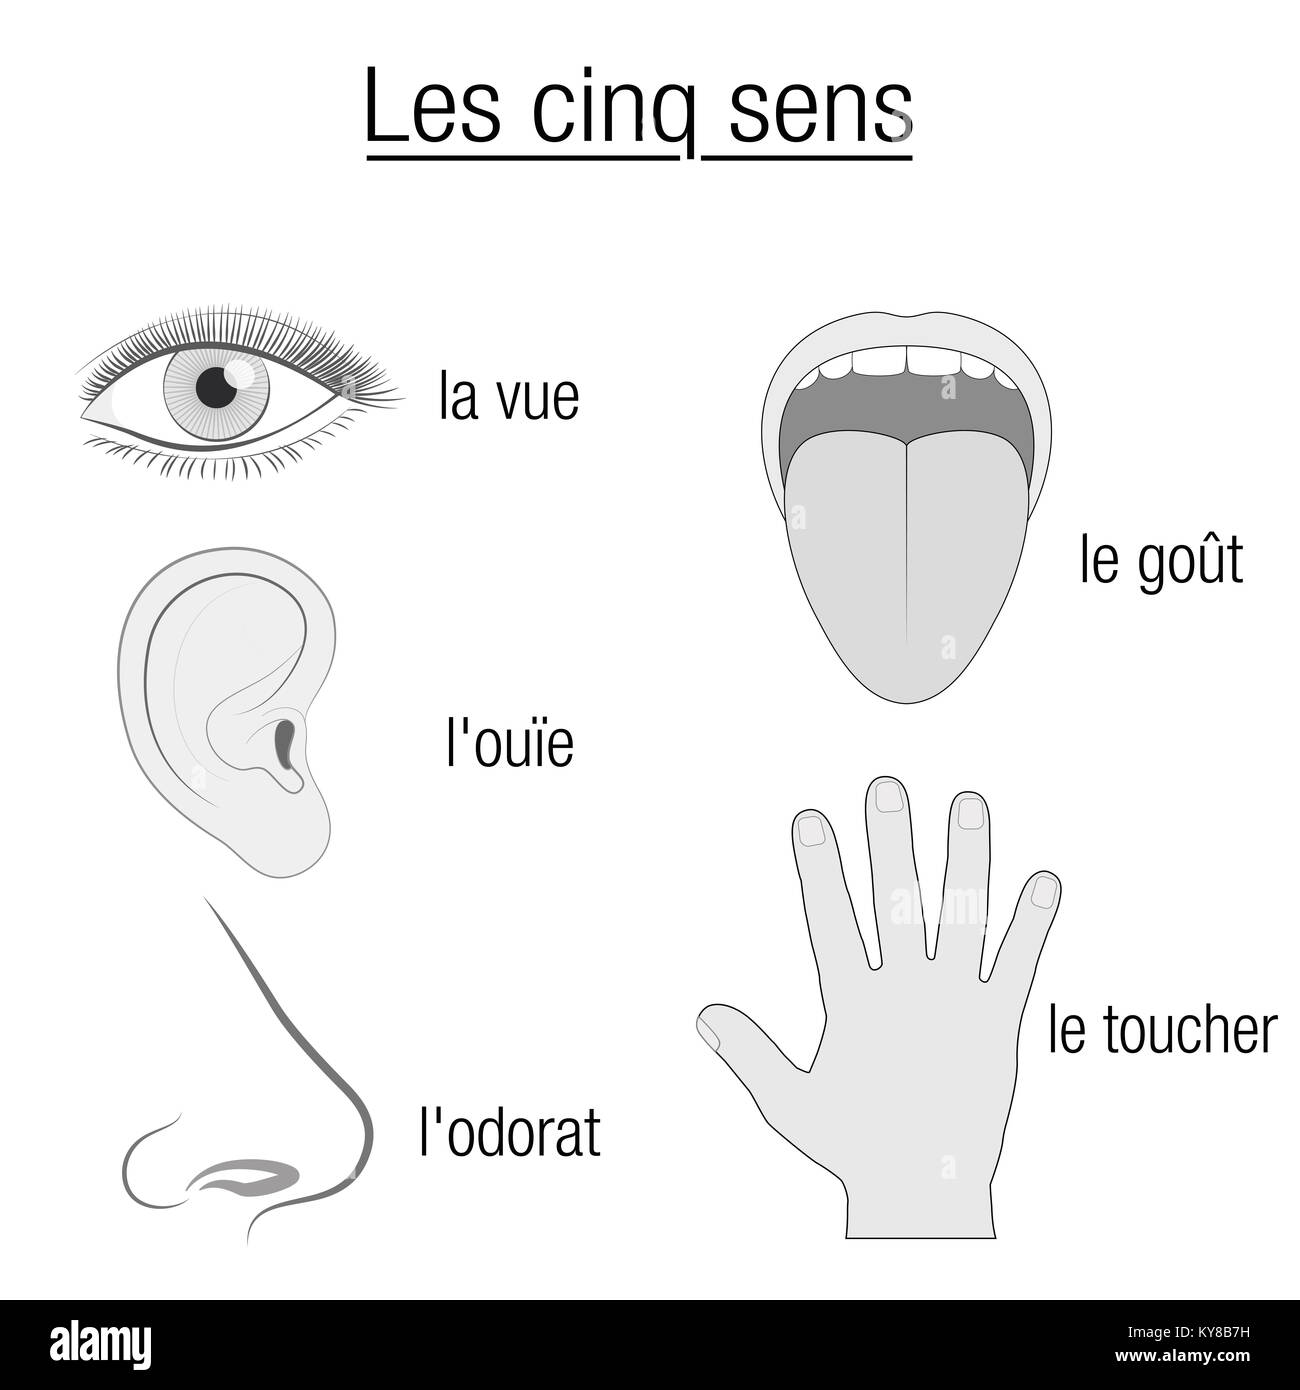 Fünf Sinne, französische Namen - Chart mit Sinnesorgane Auge, Ohr, Nase, Zunge und Hand und entsprechende Bezeichnung sehen, hören, schmecken, riechen, berühren. Stockfoto